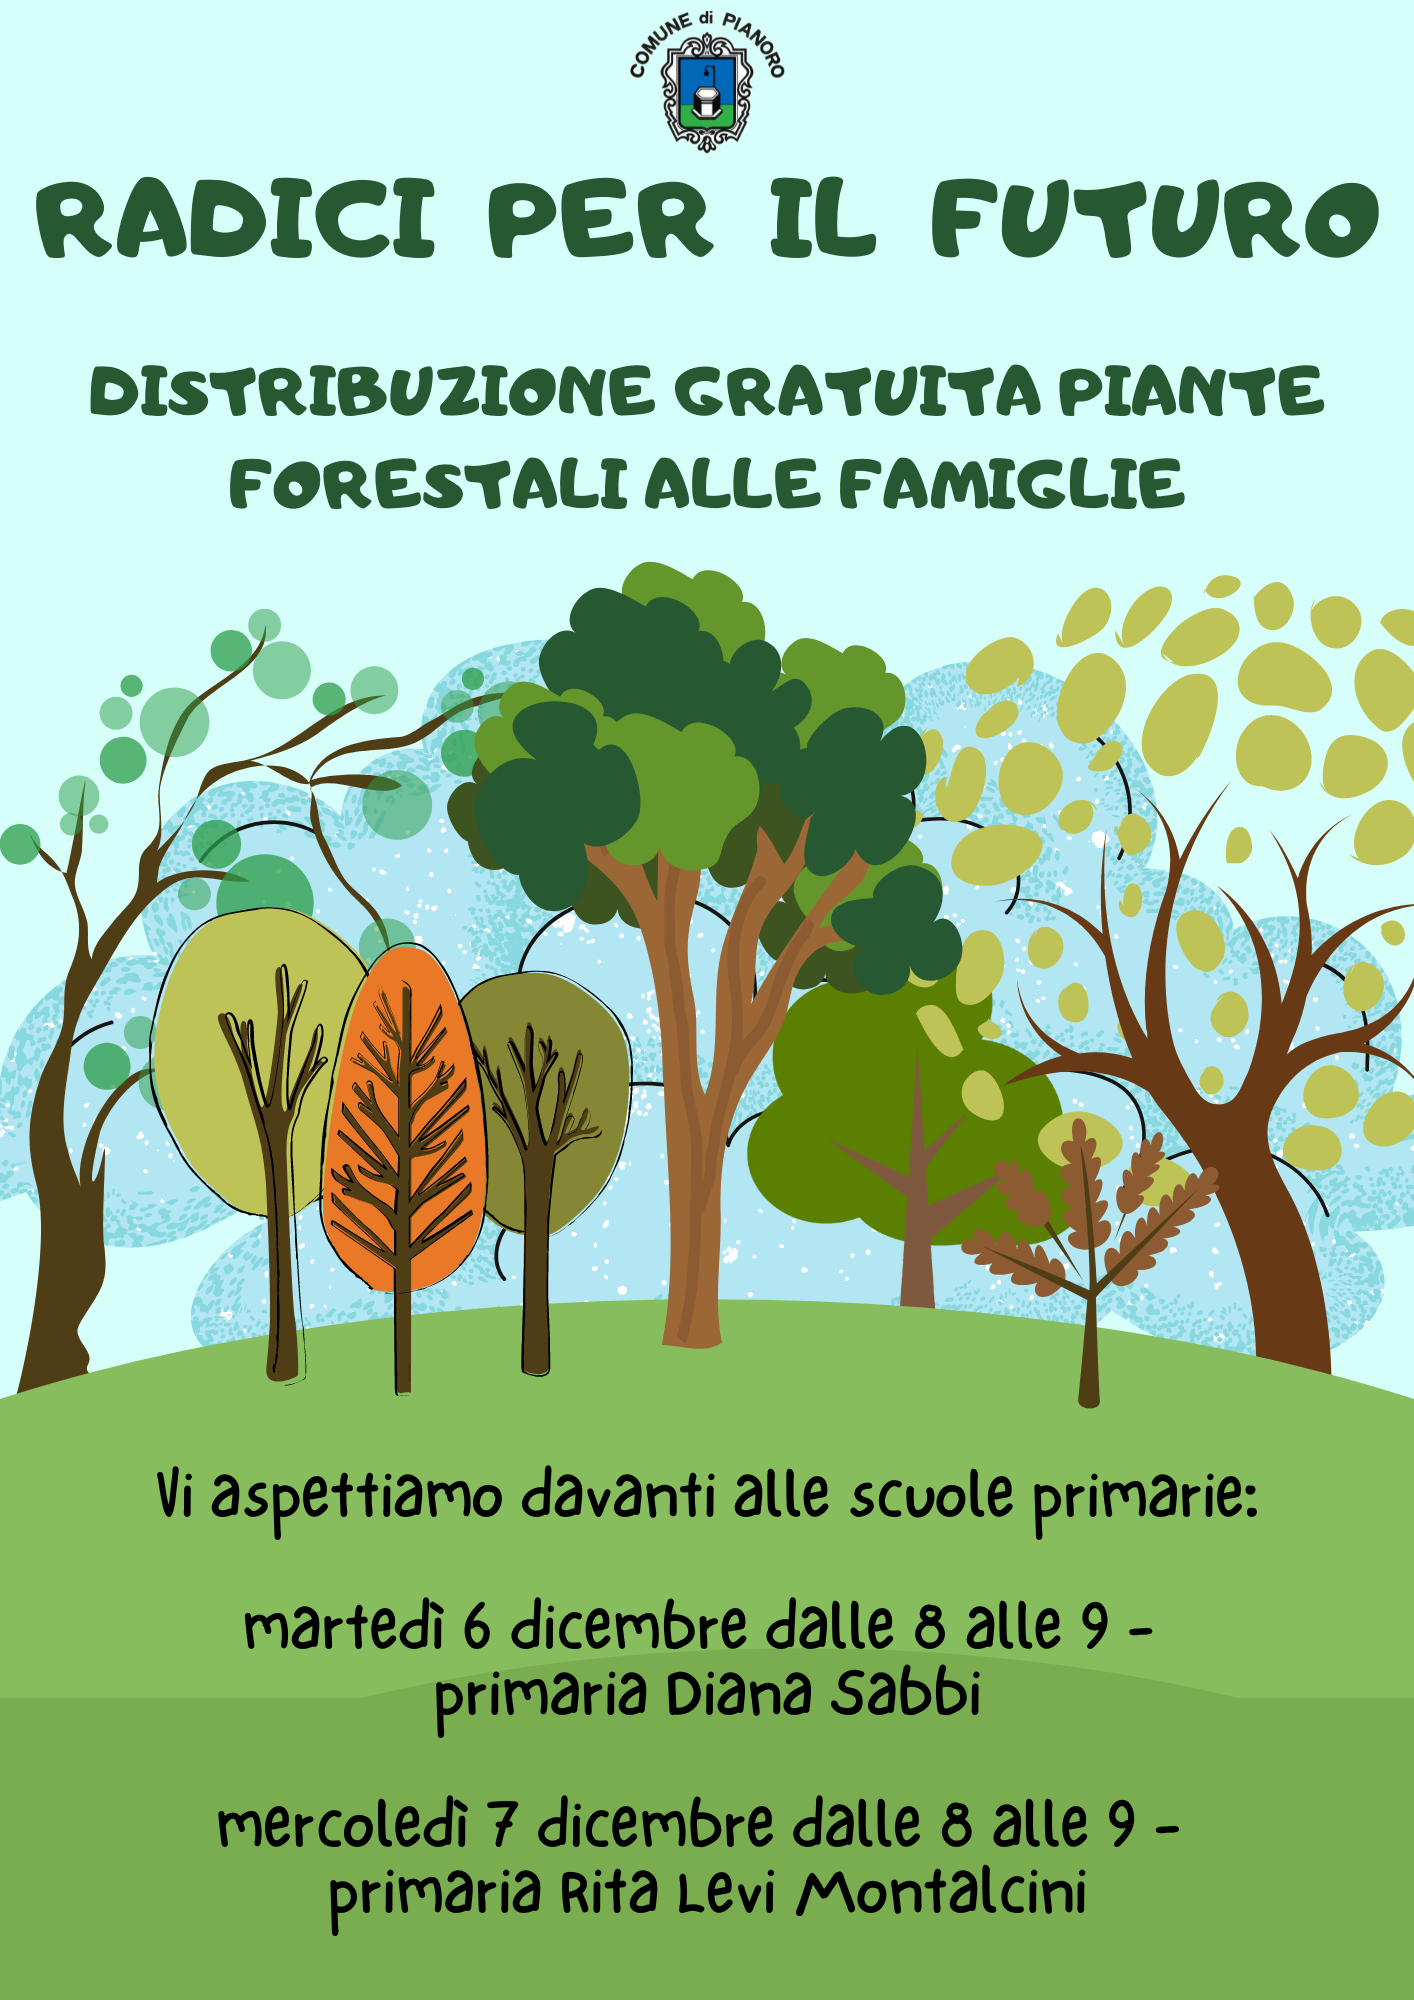 Distribuzione piante forestali alle famiglie